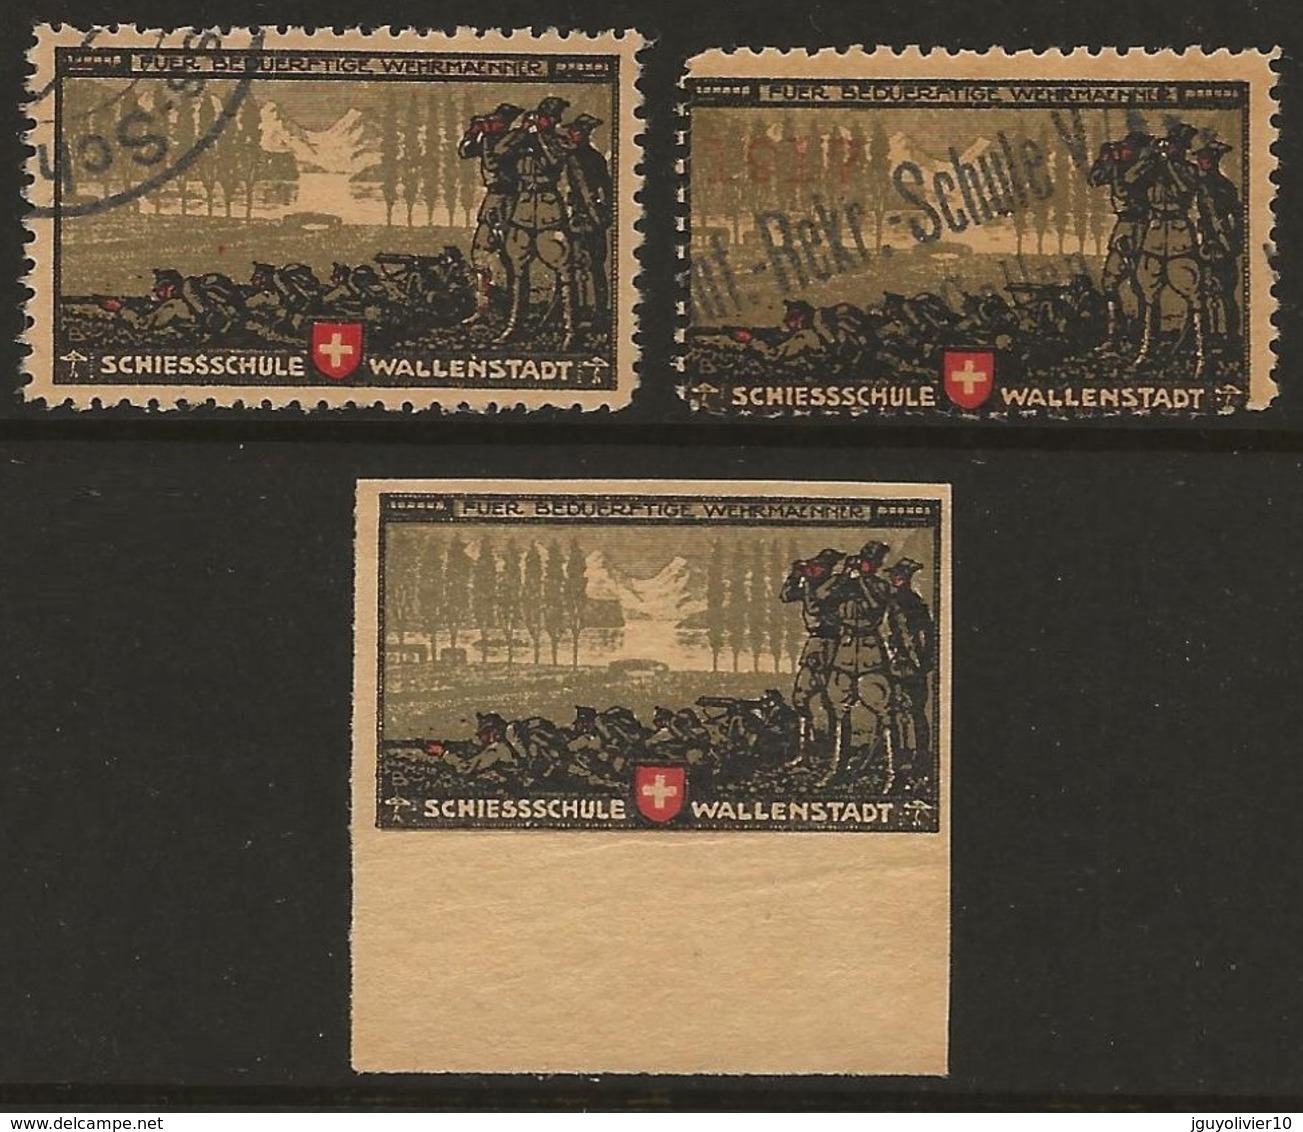 Suisse WWI Vignette Militaire Soldatenmarken VERSCHIEDENES / DIVERS 1914-18 Fine, Small Faults. Nice Group - Vignettes